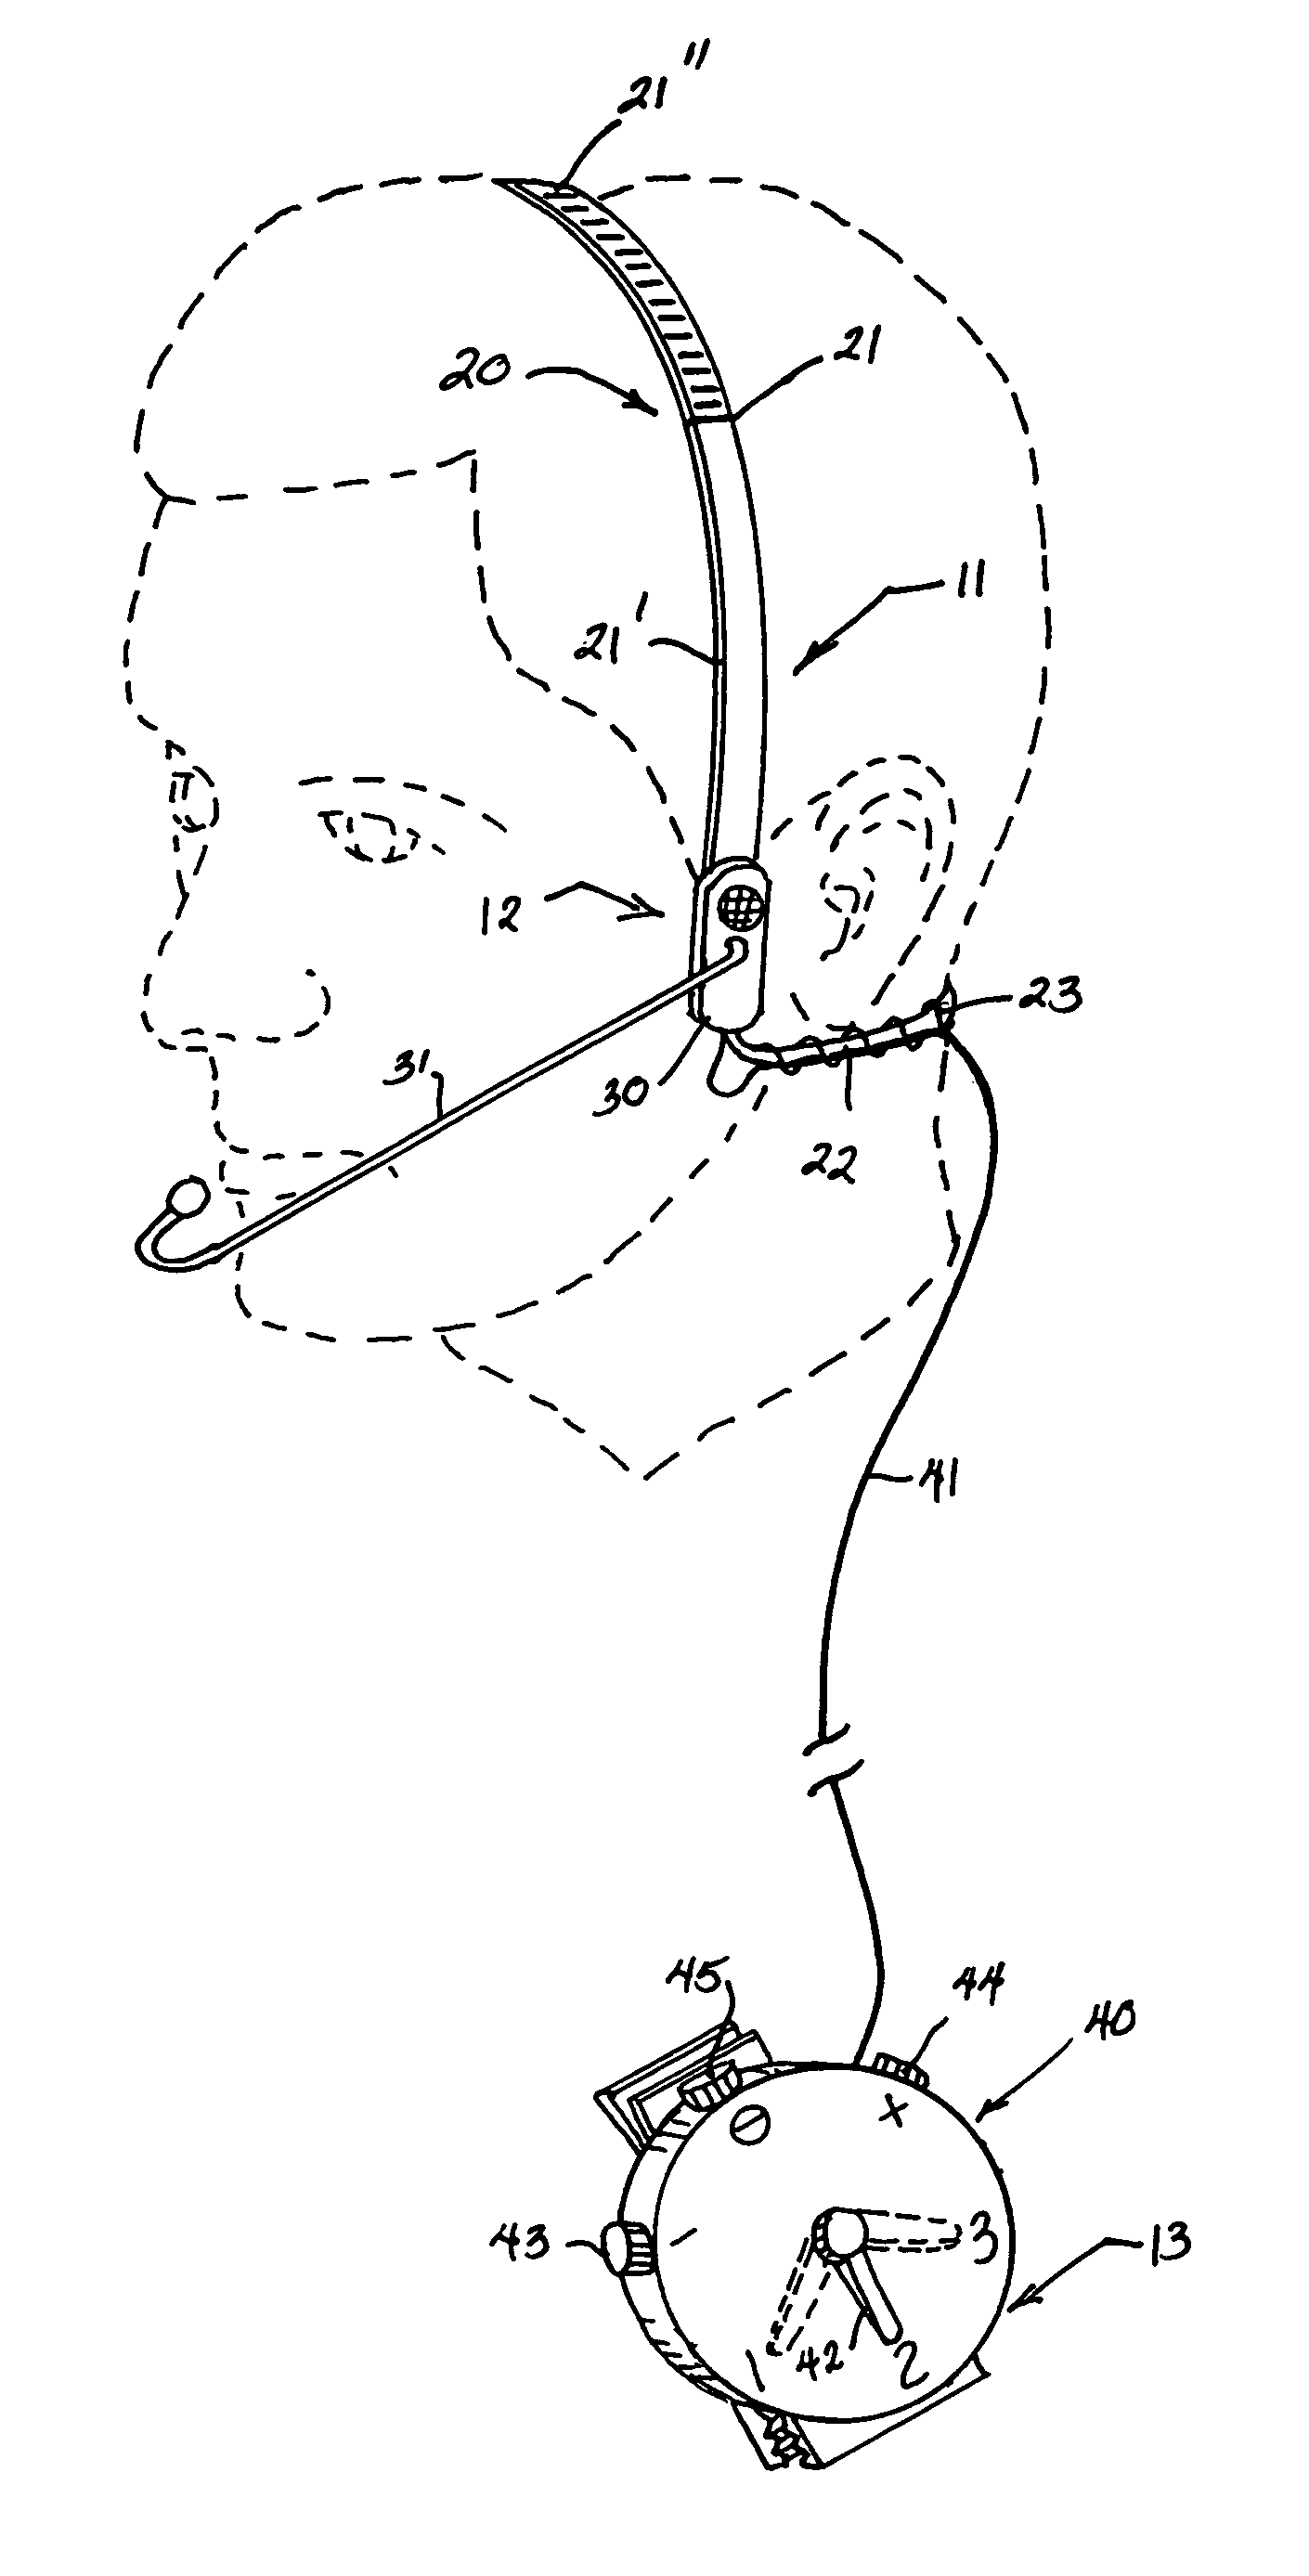 Bone conducting headset apparatus